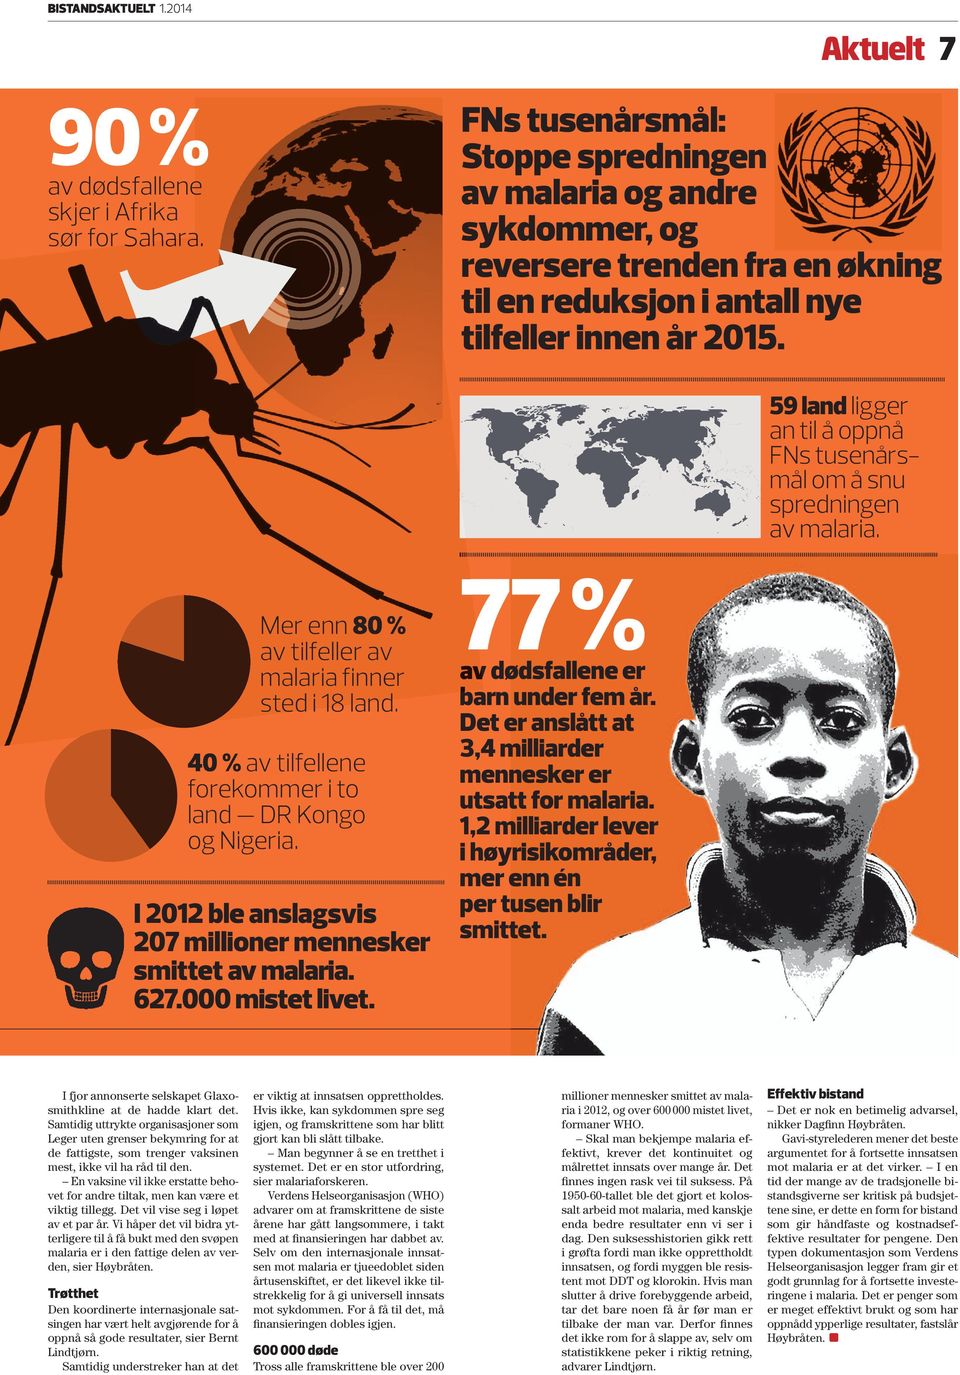 Aktuelt 7 Fns tusenårsmål: stoppe spredningen av malaria og andre sykdommer, og reversere trenden fra en økning til en reduksjon i antall nye tilfeller innen år 2015.